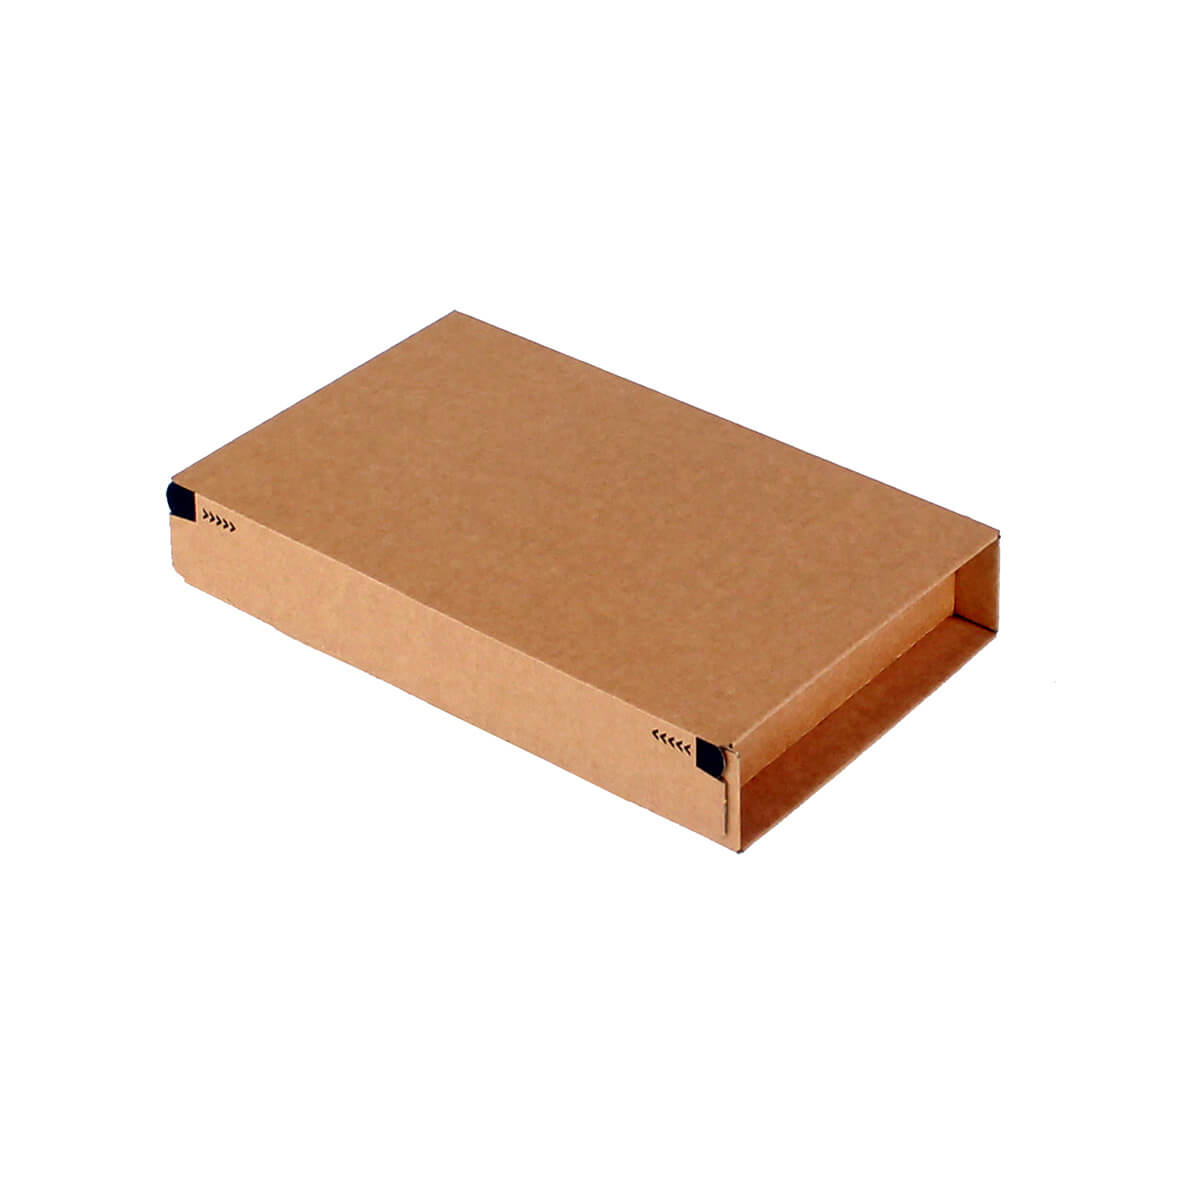 Maxibriefkarton 215x155x43 mm DIN A5 selbstklebend + Aufreißfaden braun - progressPACK